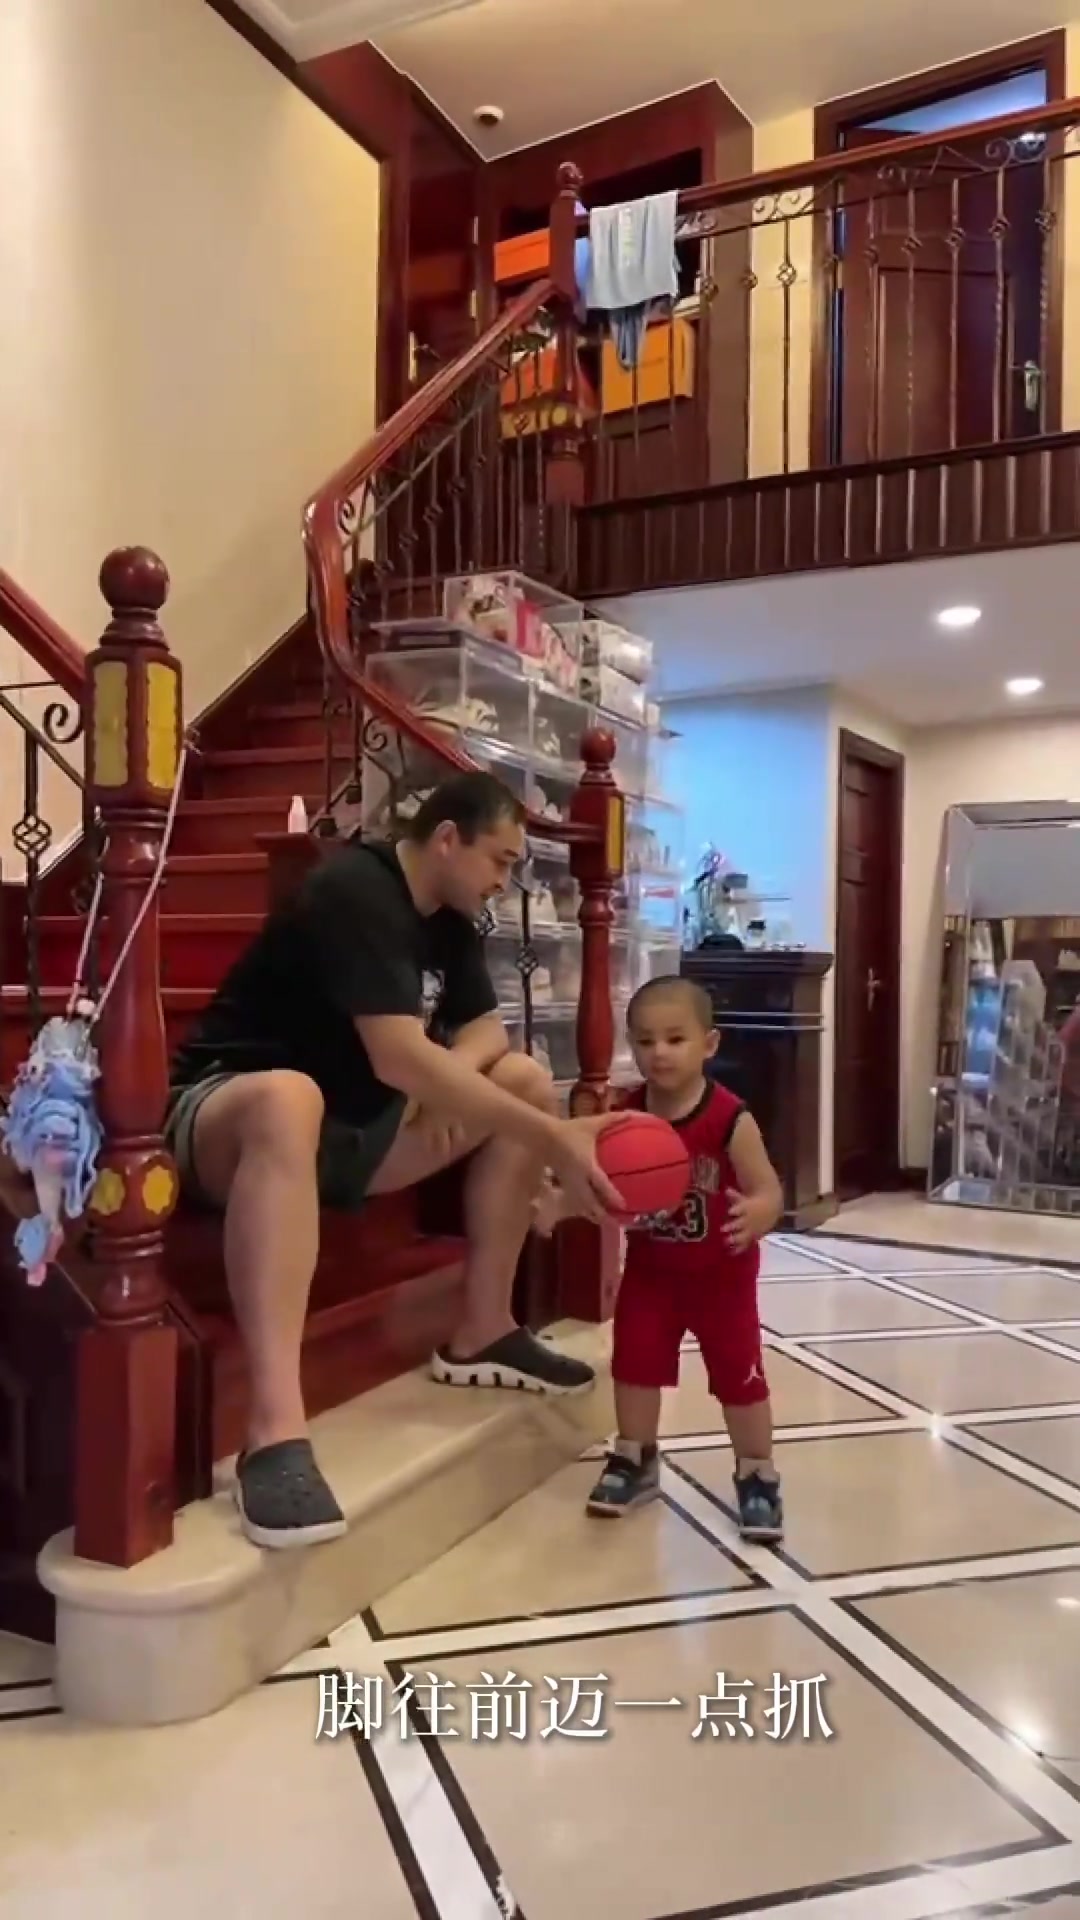 西热力江教导3岁小儿子打篮球 感觉下一秒就要骂人了